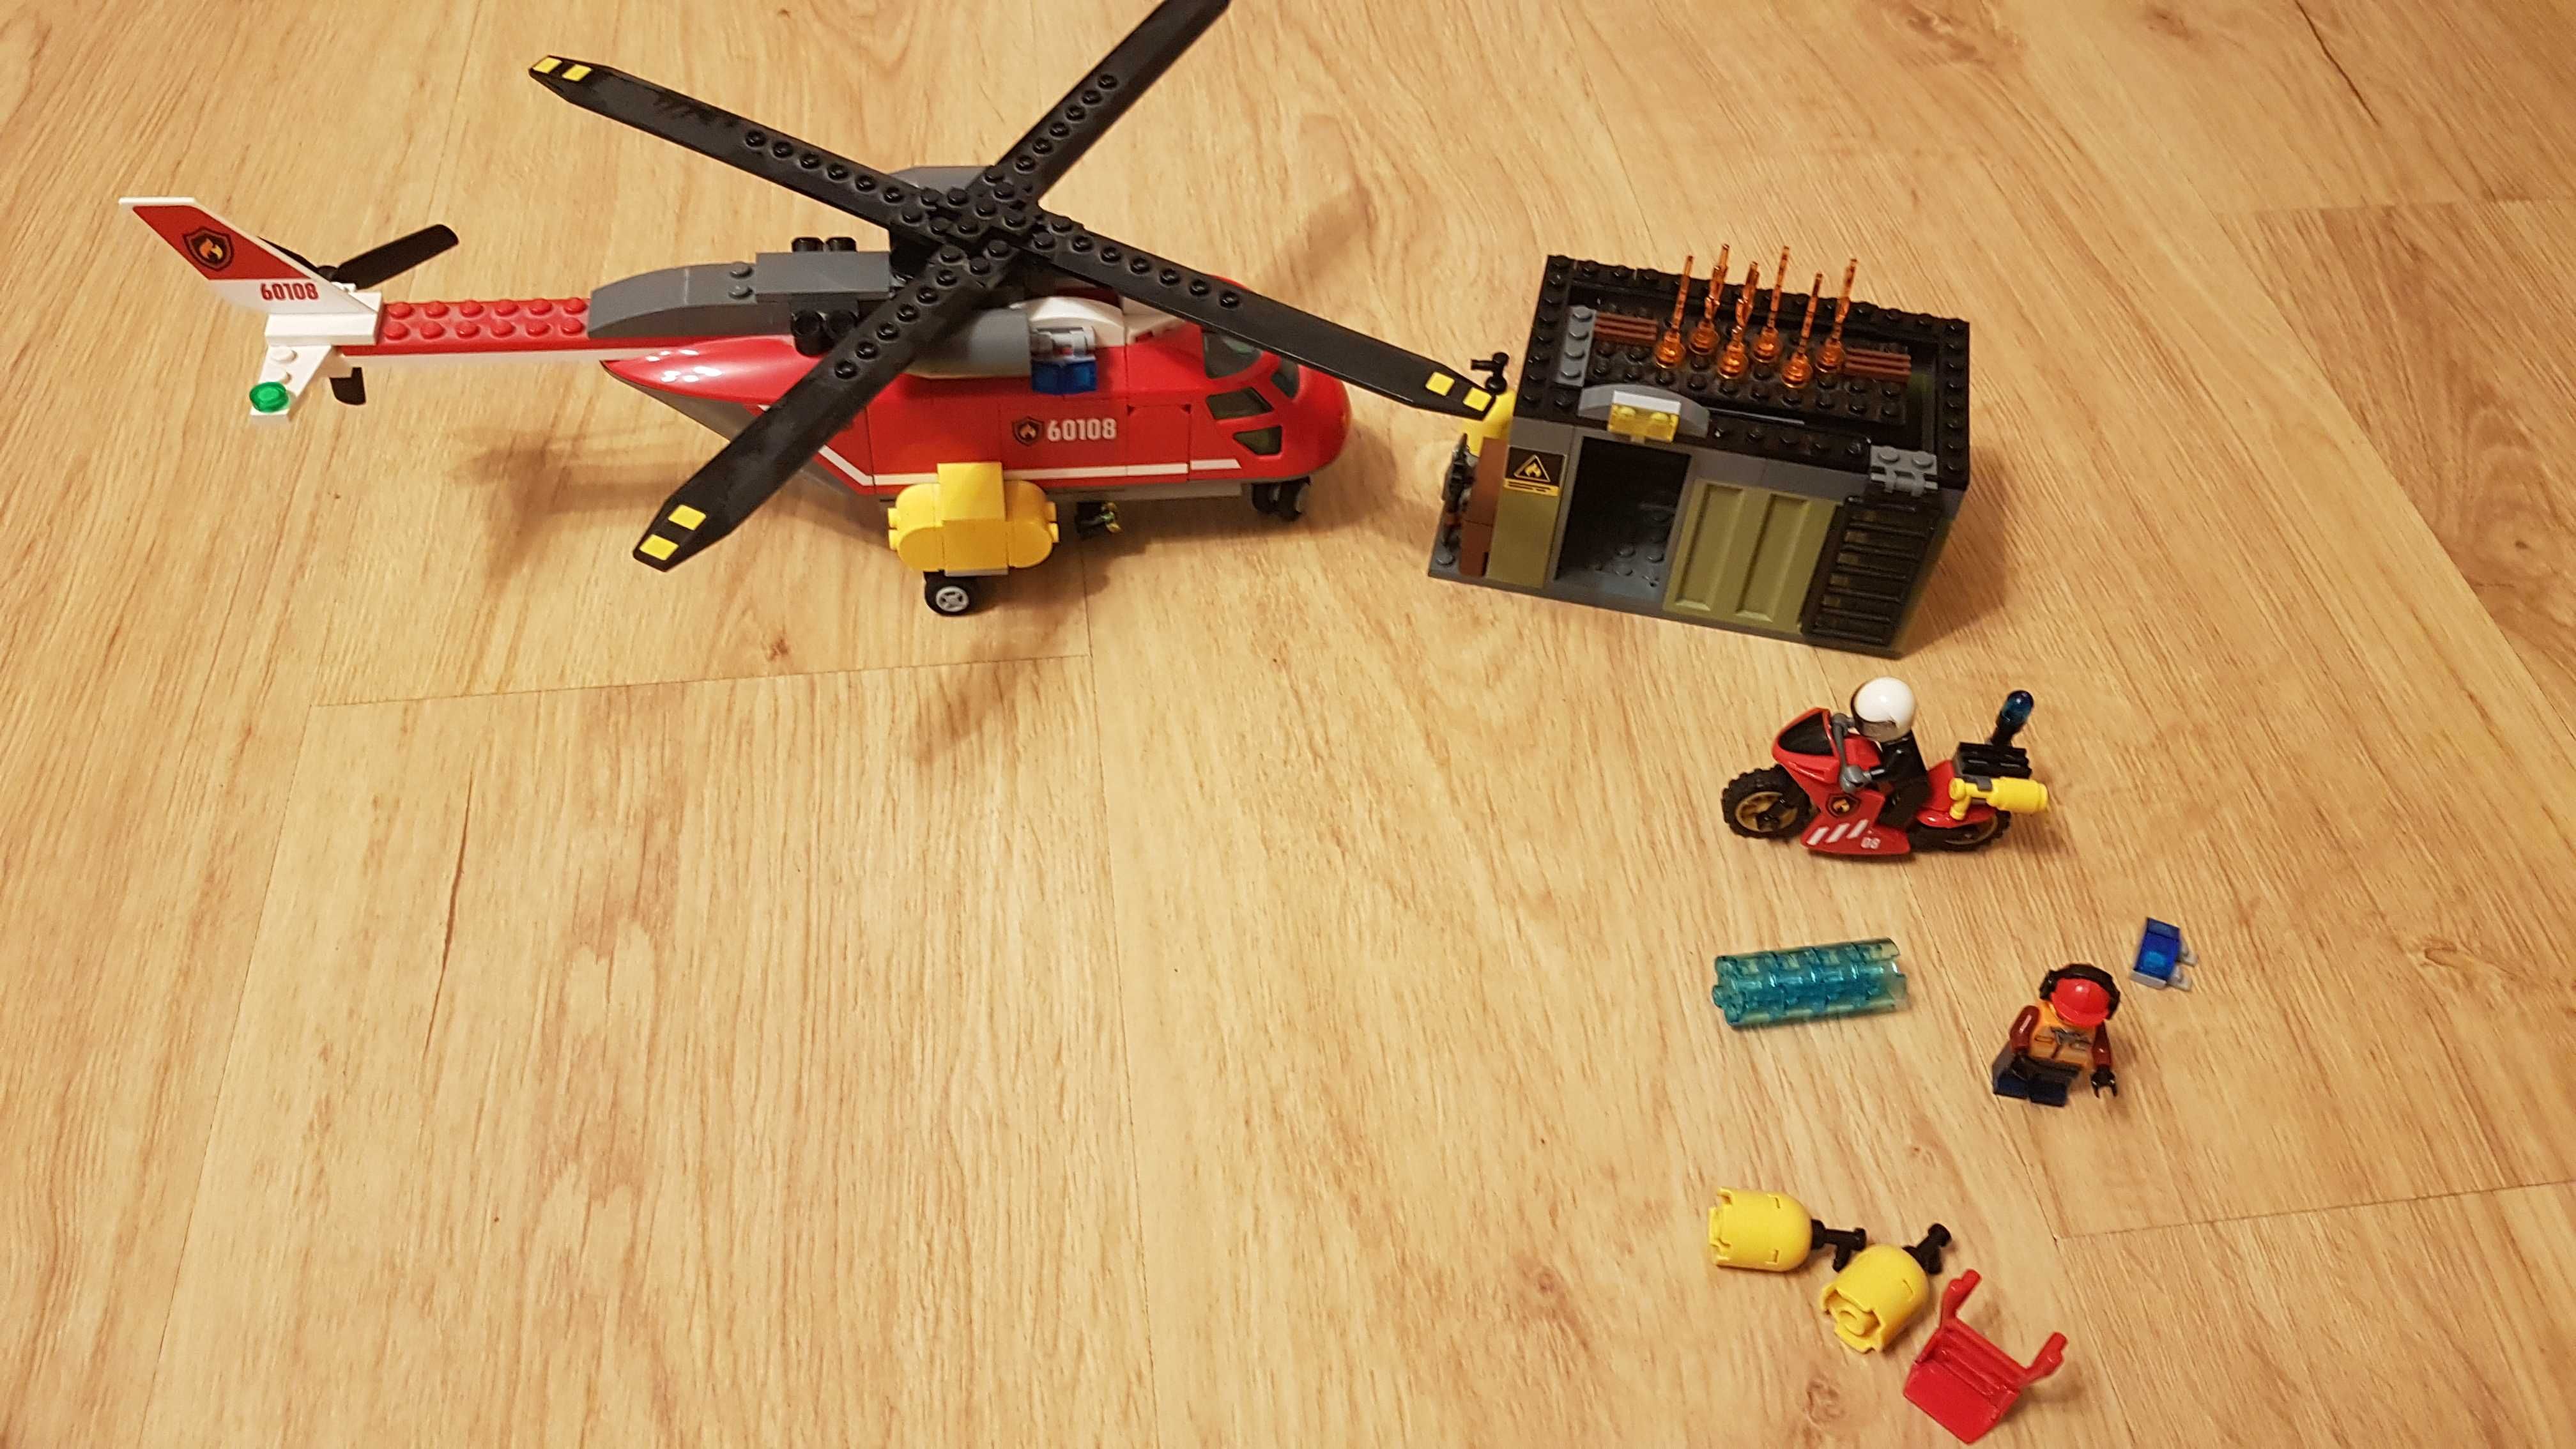 Lego City 60108 helikopter